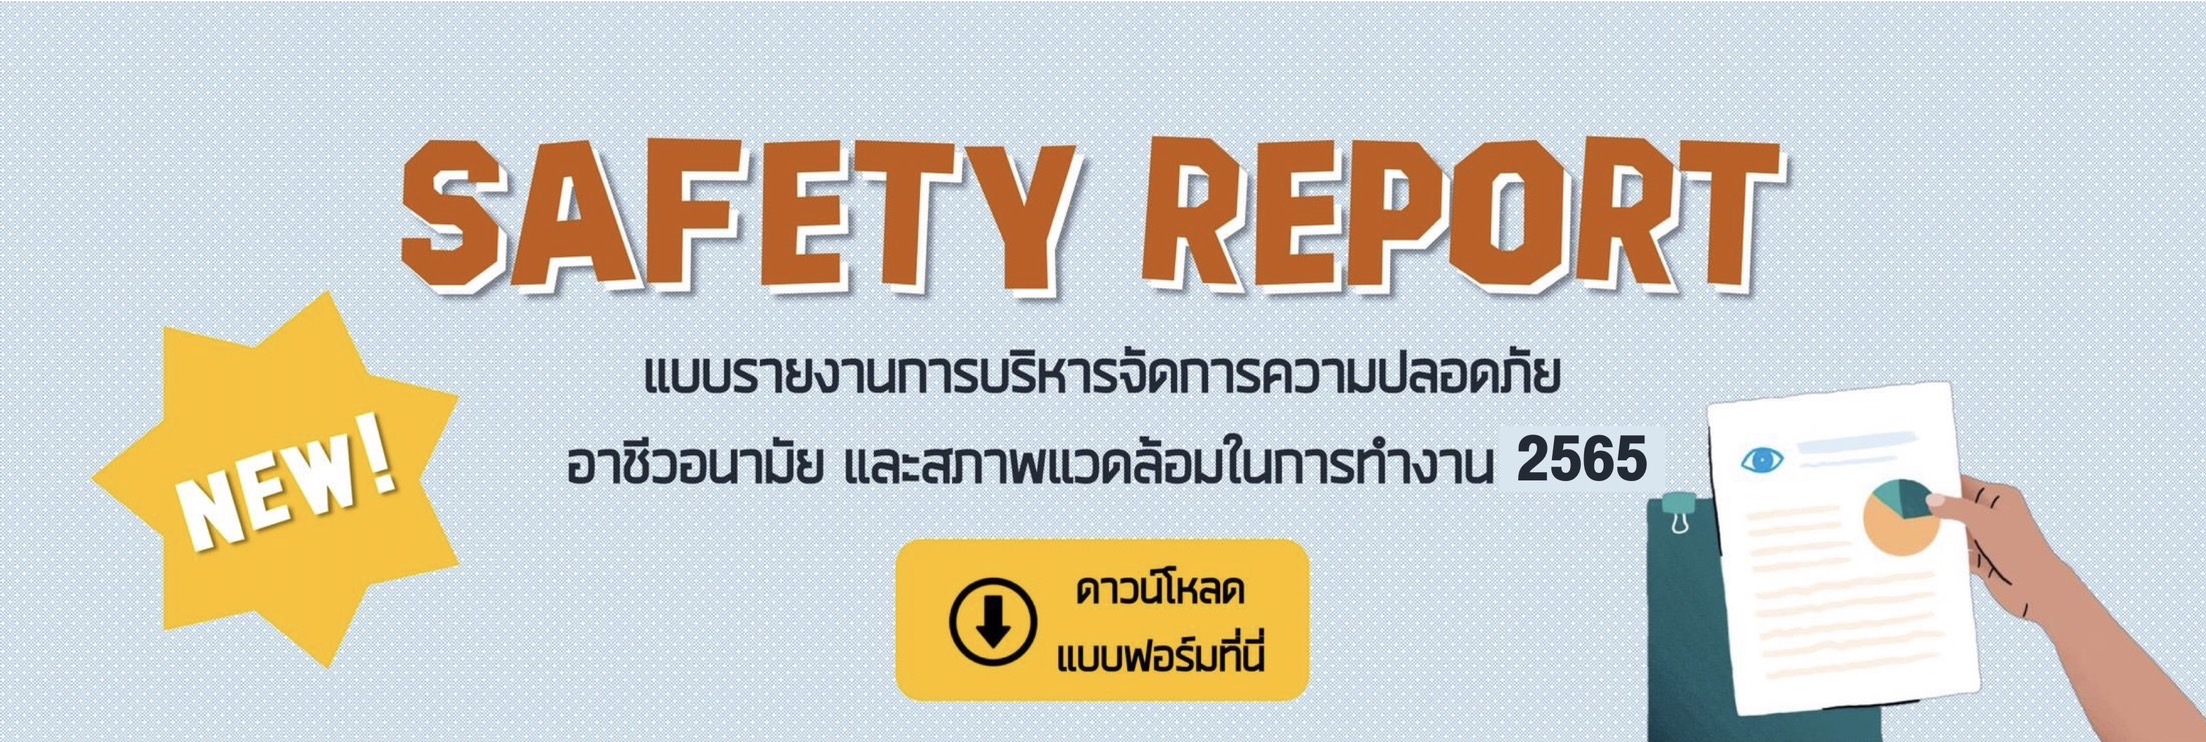 Safetyreport65